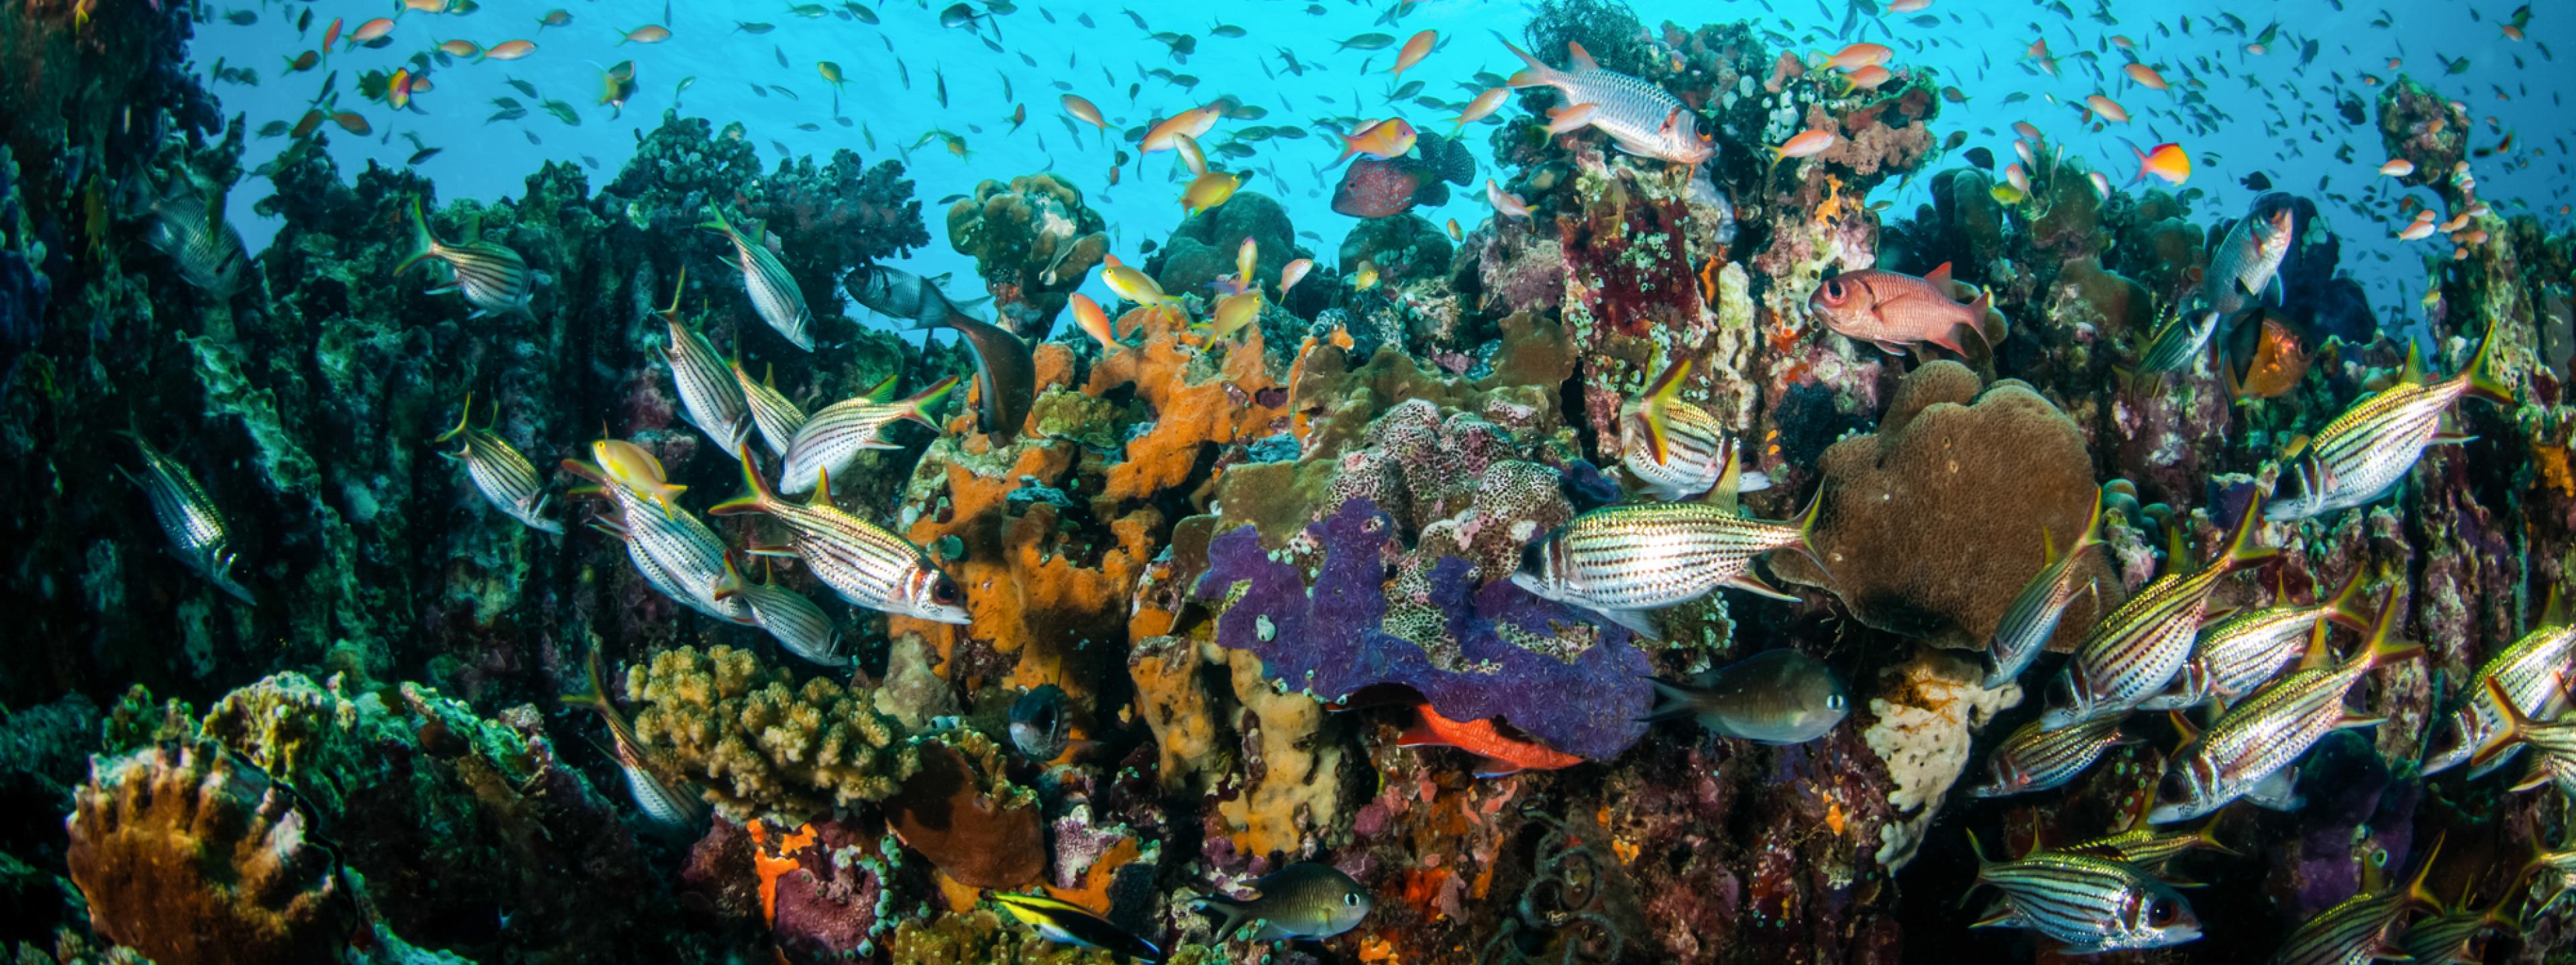 Das Bild zeigt quirlige Fischschwärme vor einem Korallenriff